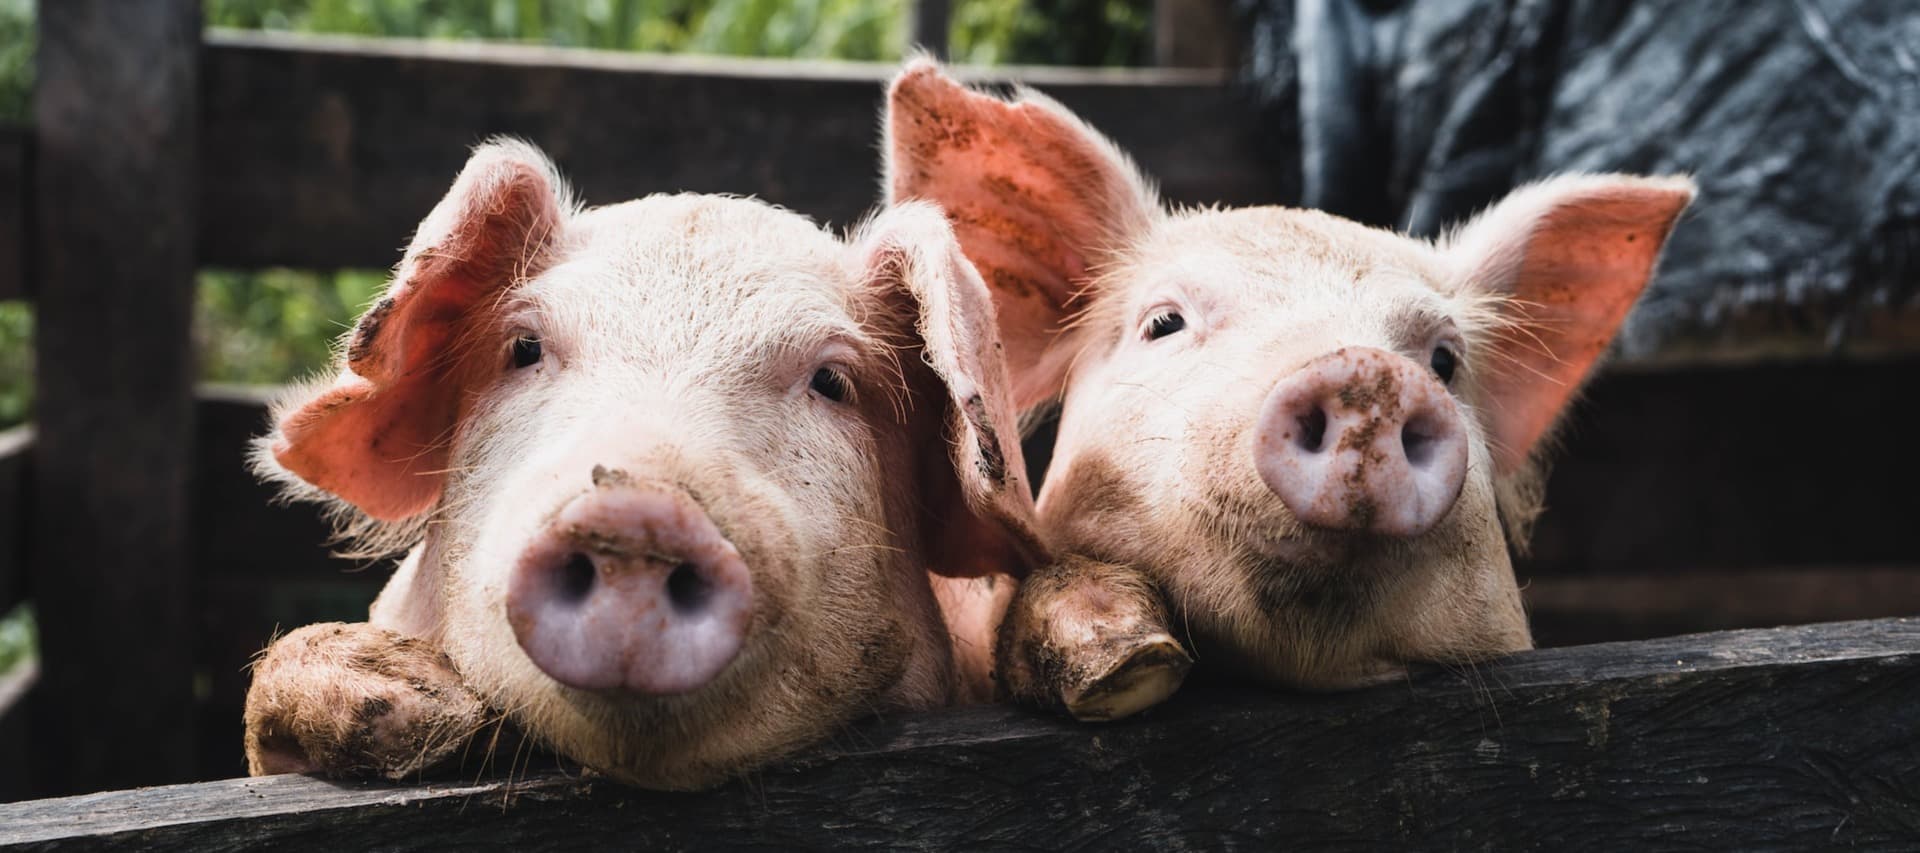 Фото новости: "Поголовье свиней в Германии сократилось до рекордно низкого уровня"